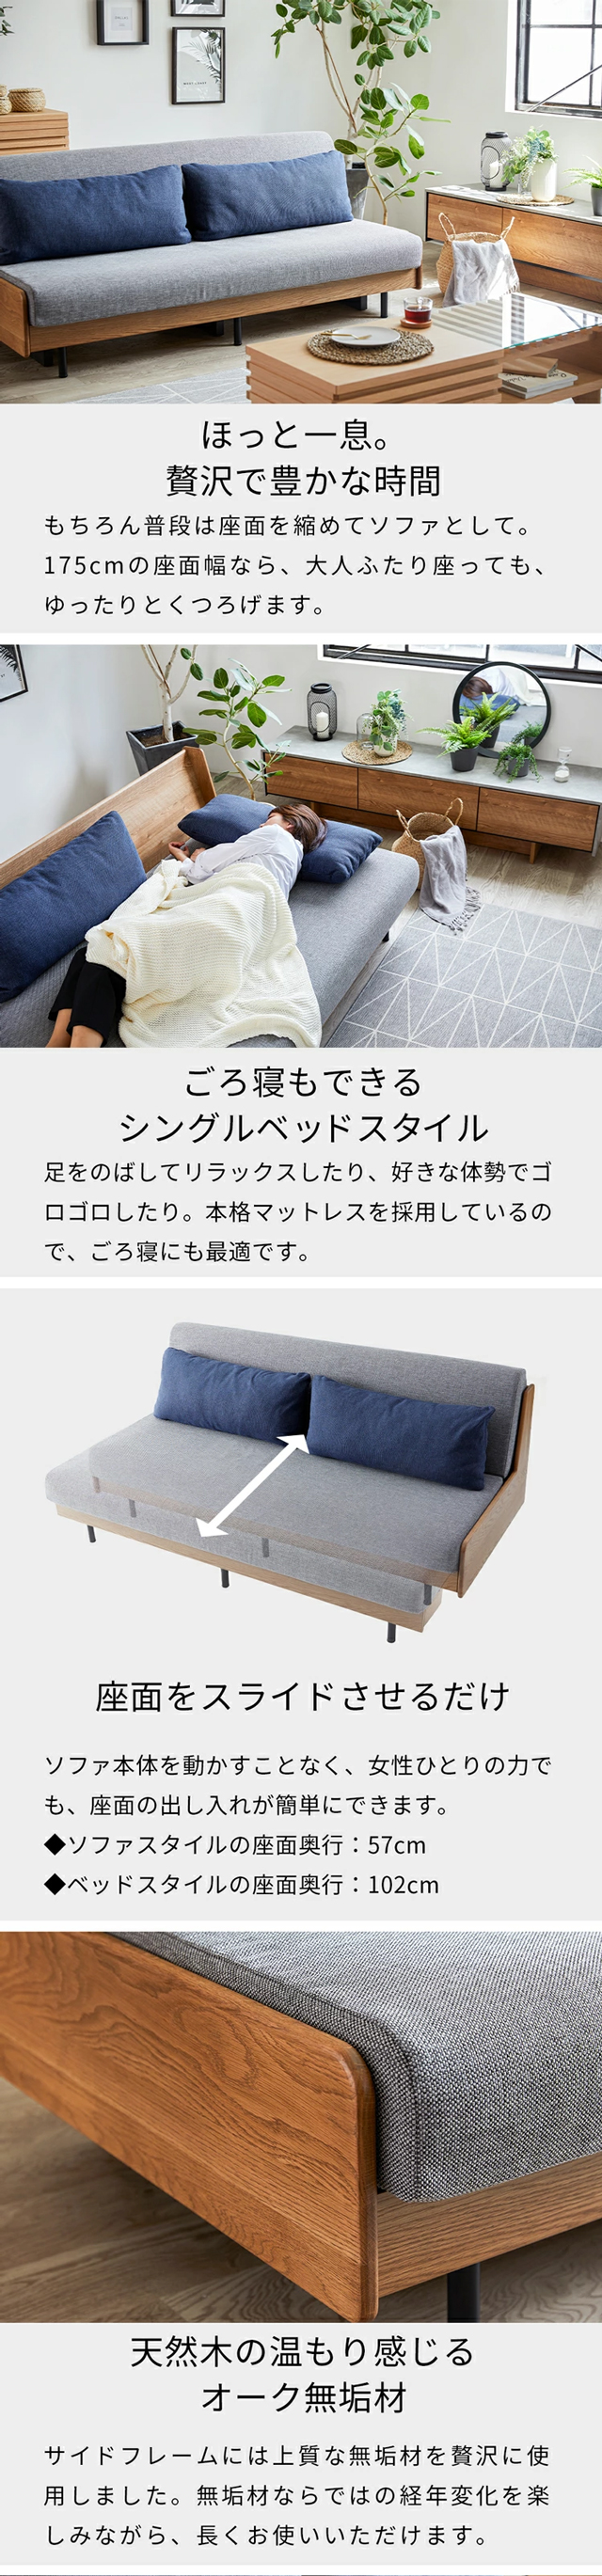 ソファは３人掛けスタイル、シングルベッドの広さ